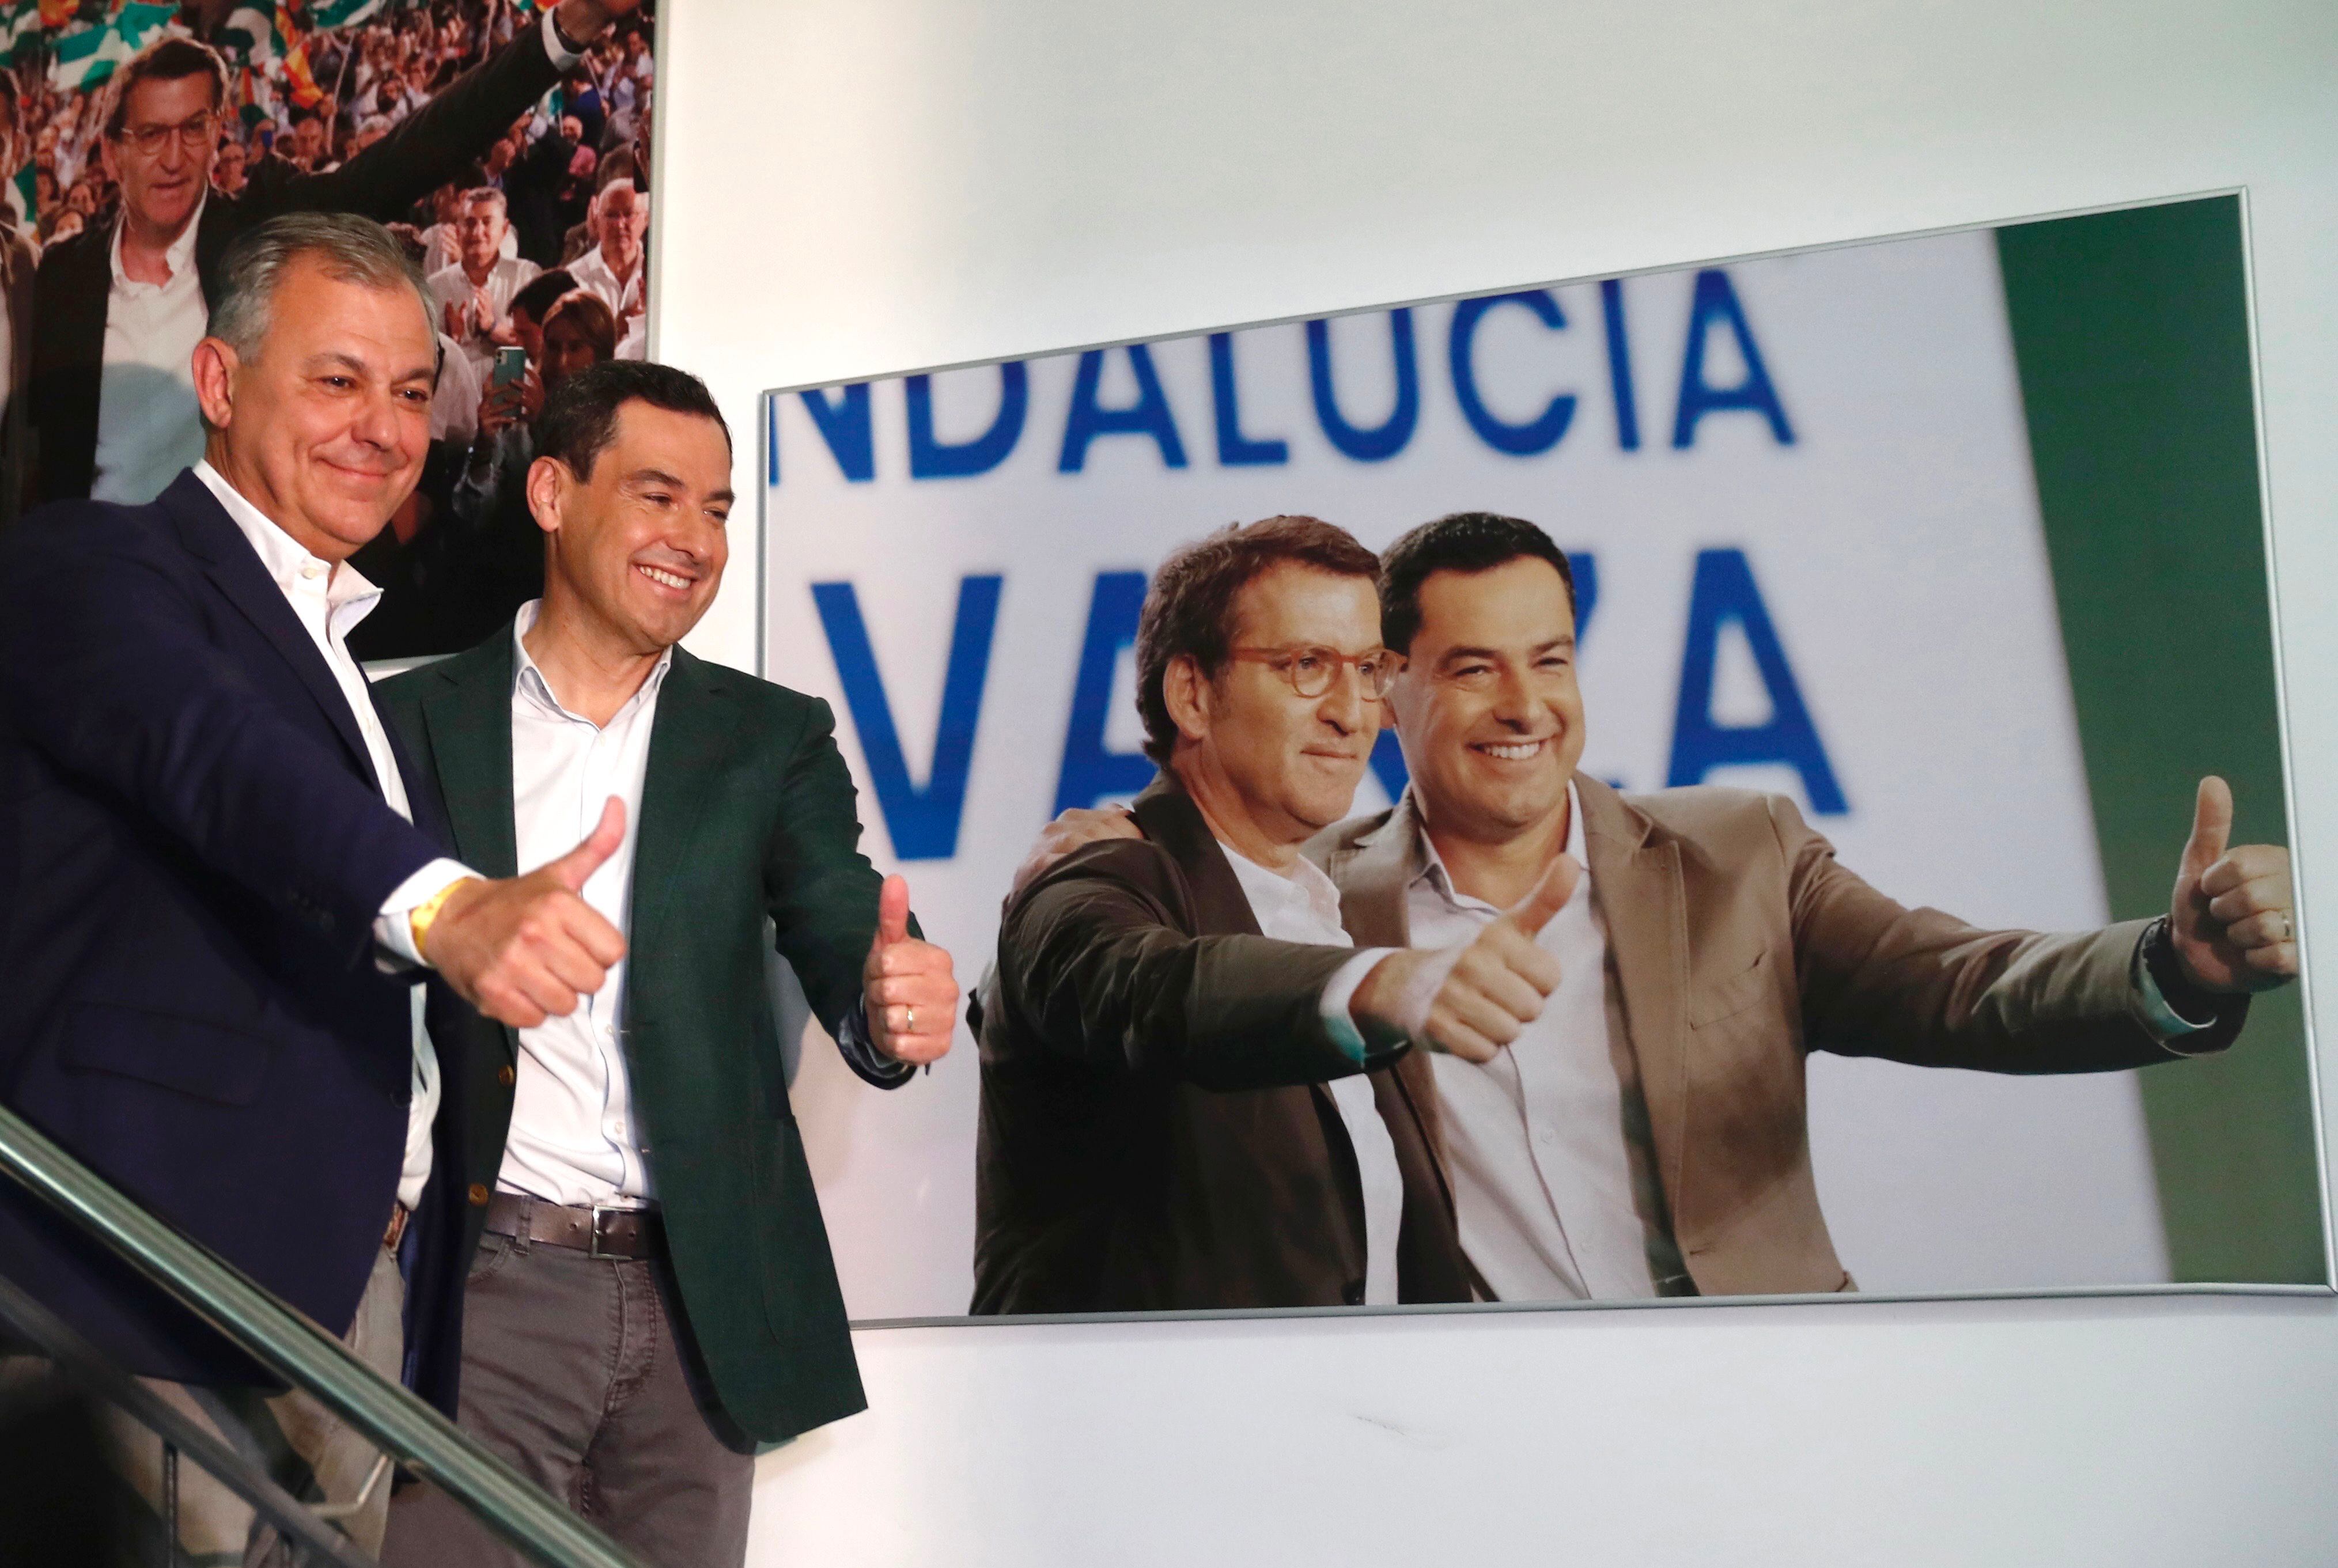 El candidato del PP a la alcaldía de Sevilla, José Luis Sanz (a la izquierda), junto al presidente de la Junta de Andalucía, Juanma Moreno Bonilla, tras conocer los resultados. A la derecha, una imagen de Alberto Núñez Feijóo con Juan Manuel Moreno.